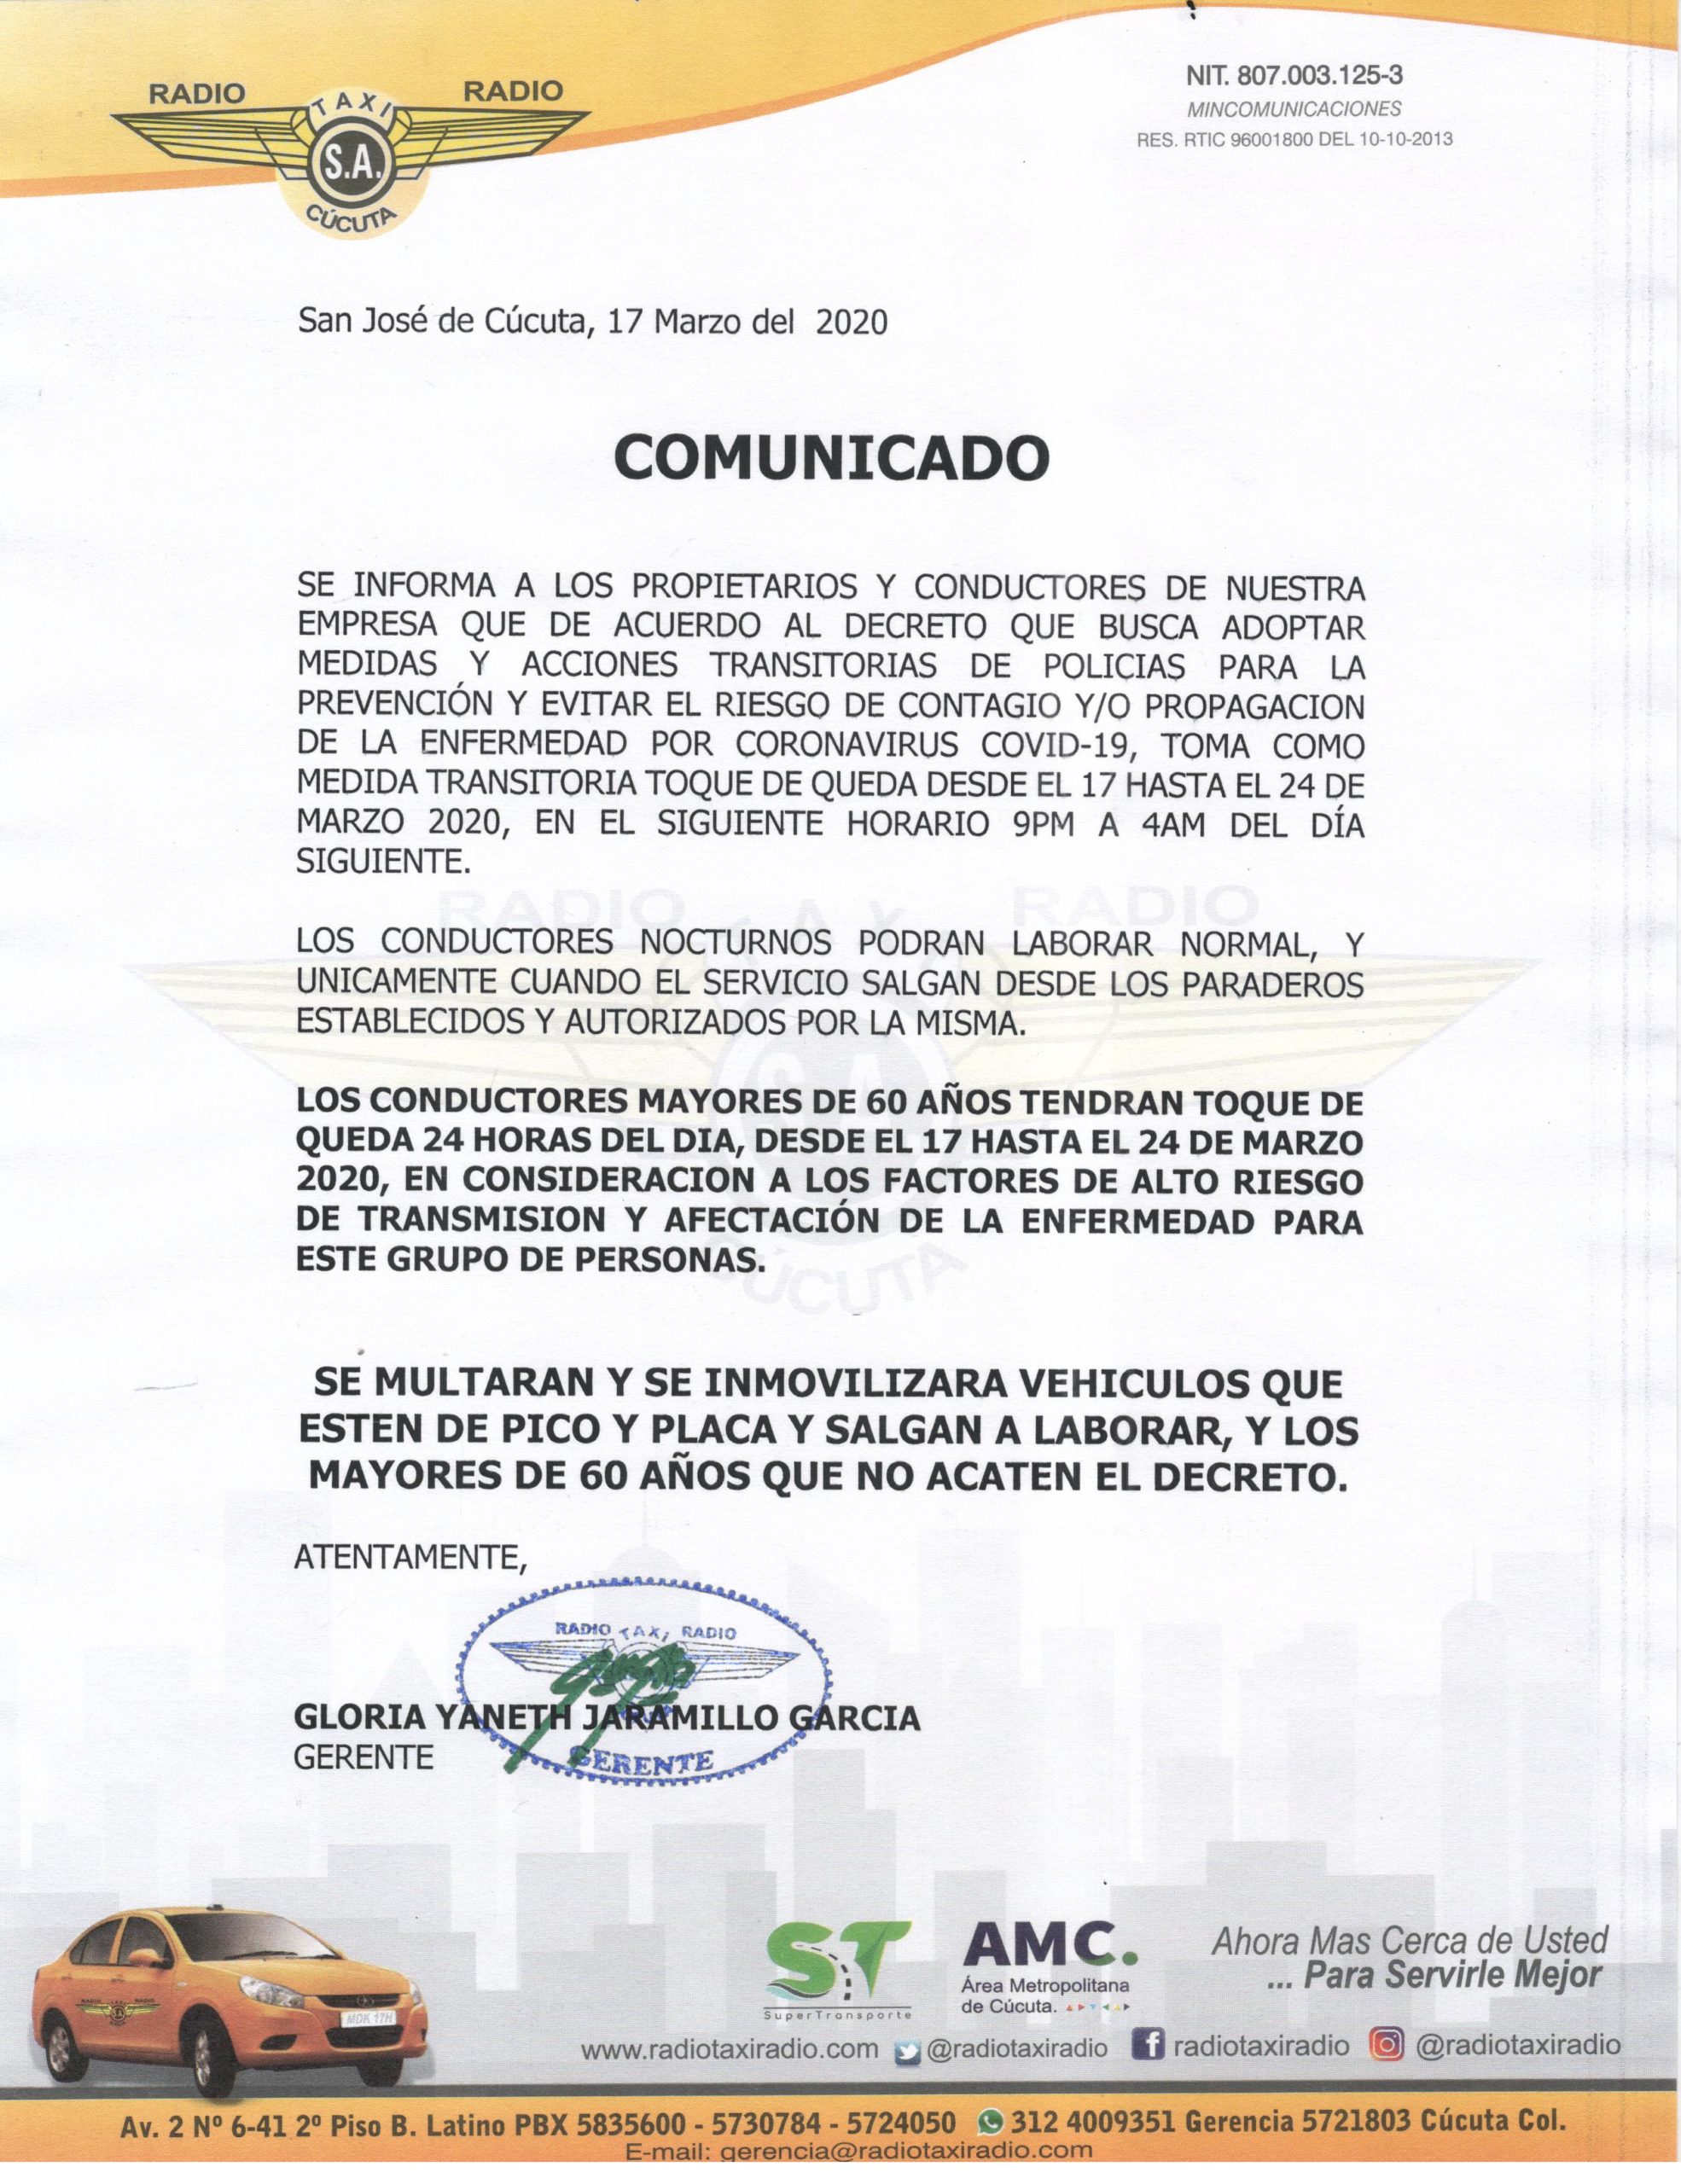 Comunicado sobre el toque de queda en Cúcuta